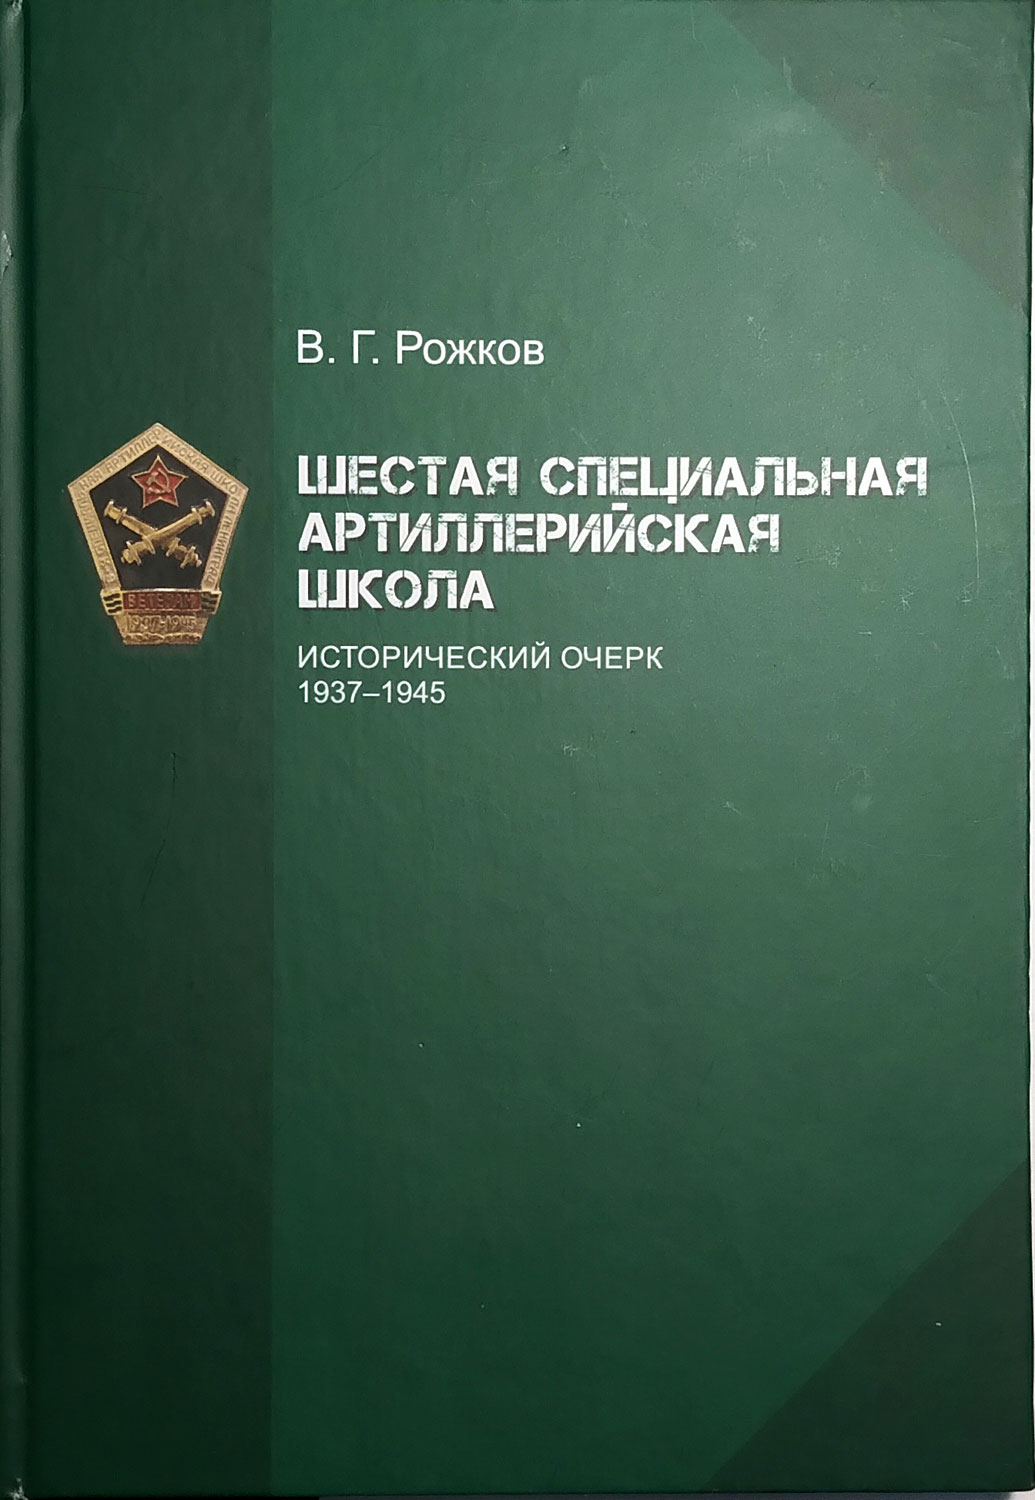 Шестая специальная артиллерийская школа. Исторический очерк 1937-1945